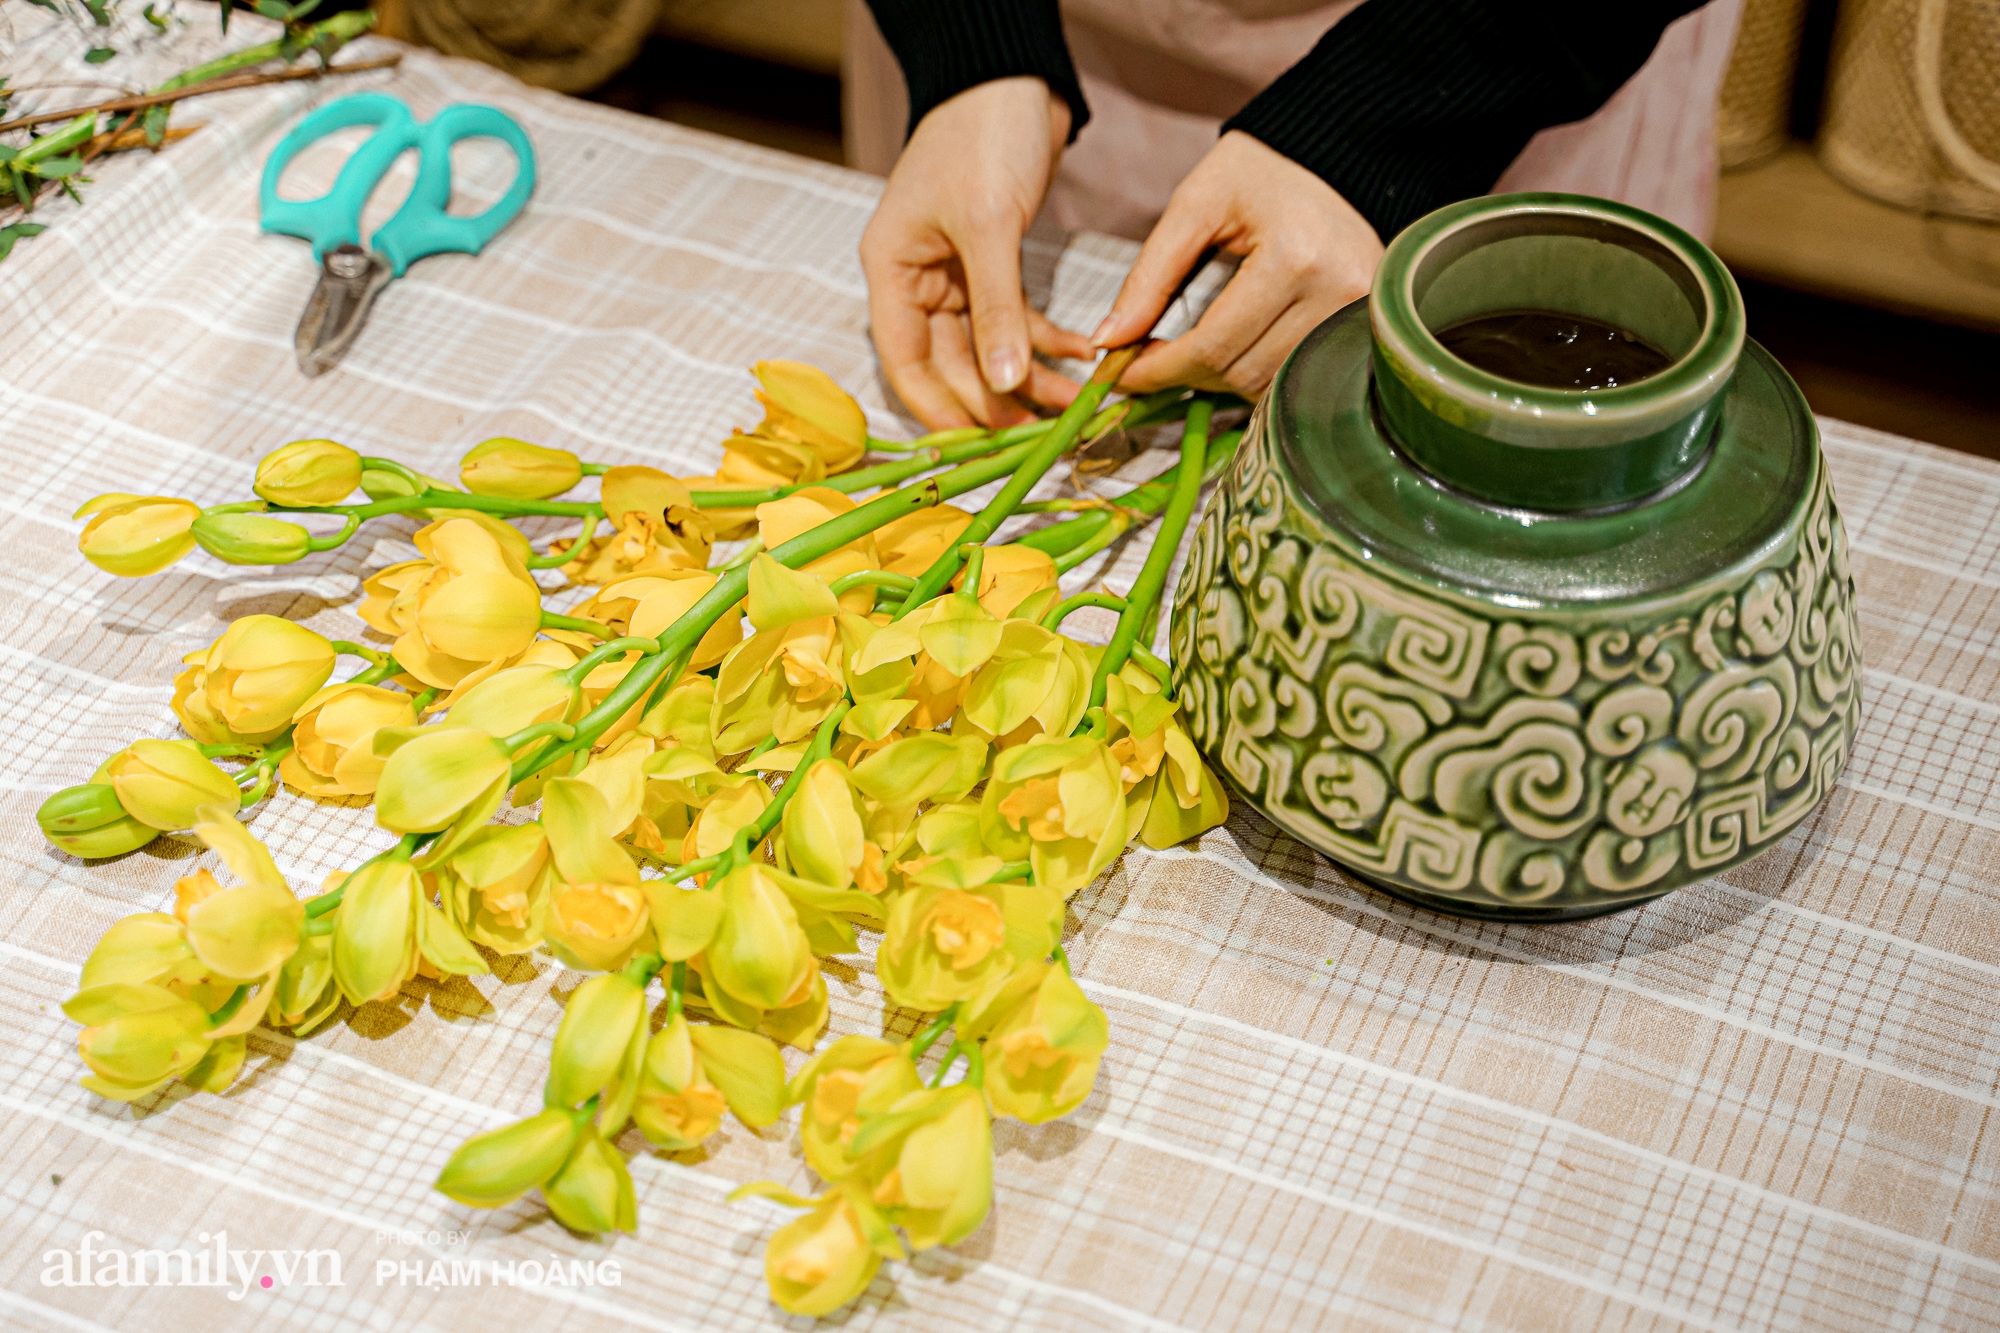 Cách chọn hoa lan hoàng thảo cách cắm hoa lan đẹp nhất để tặng người thân hoặc bạn bè